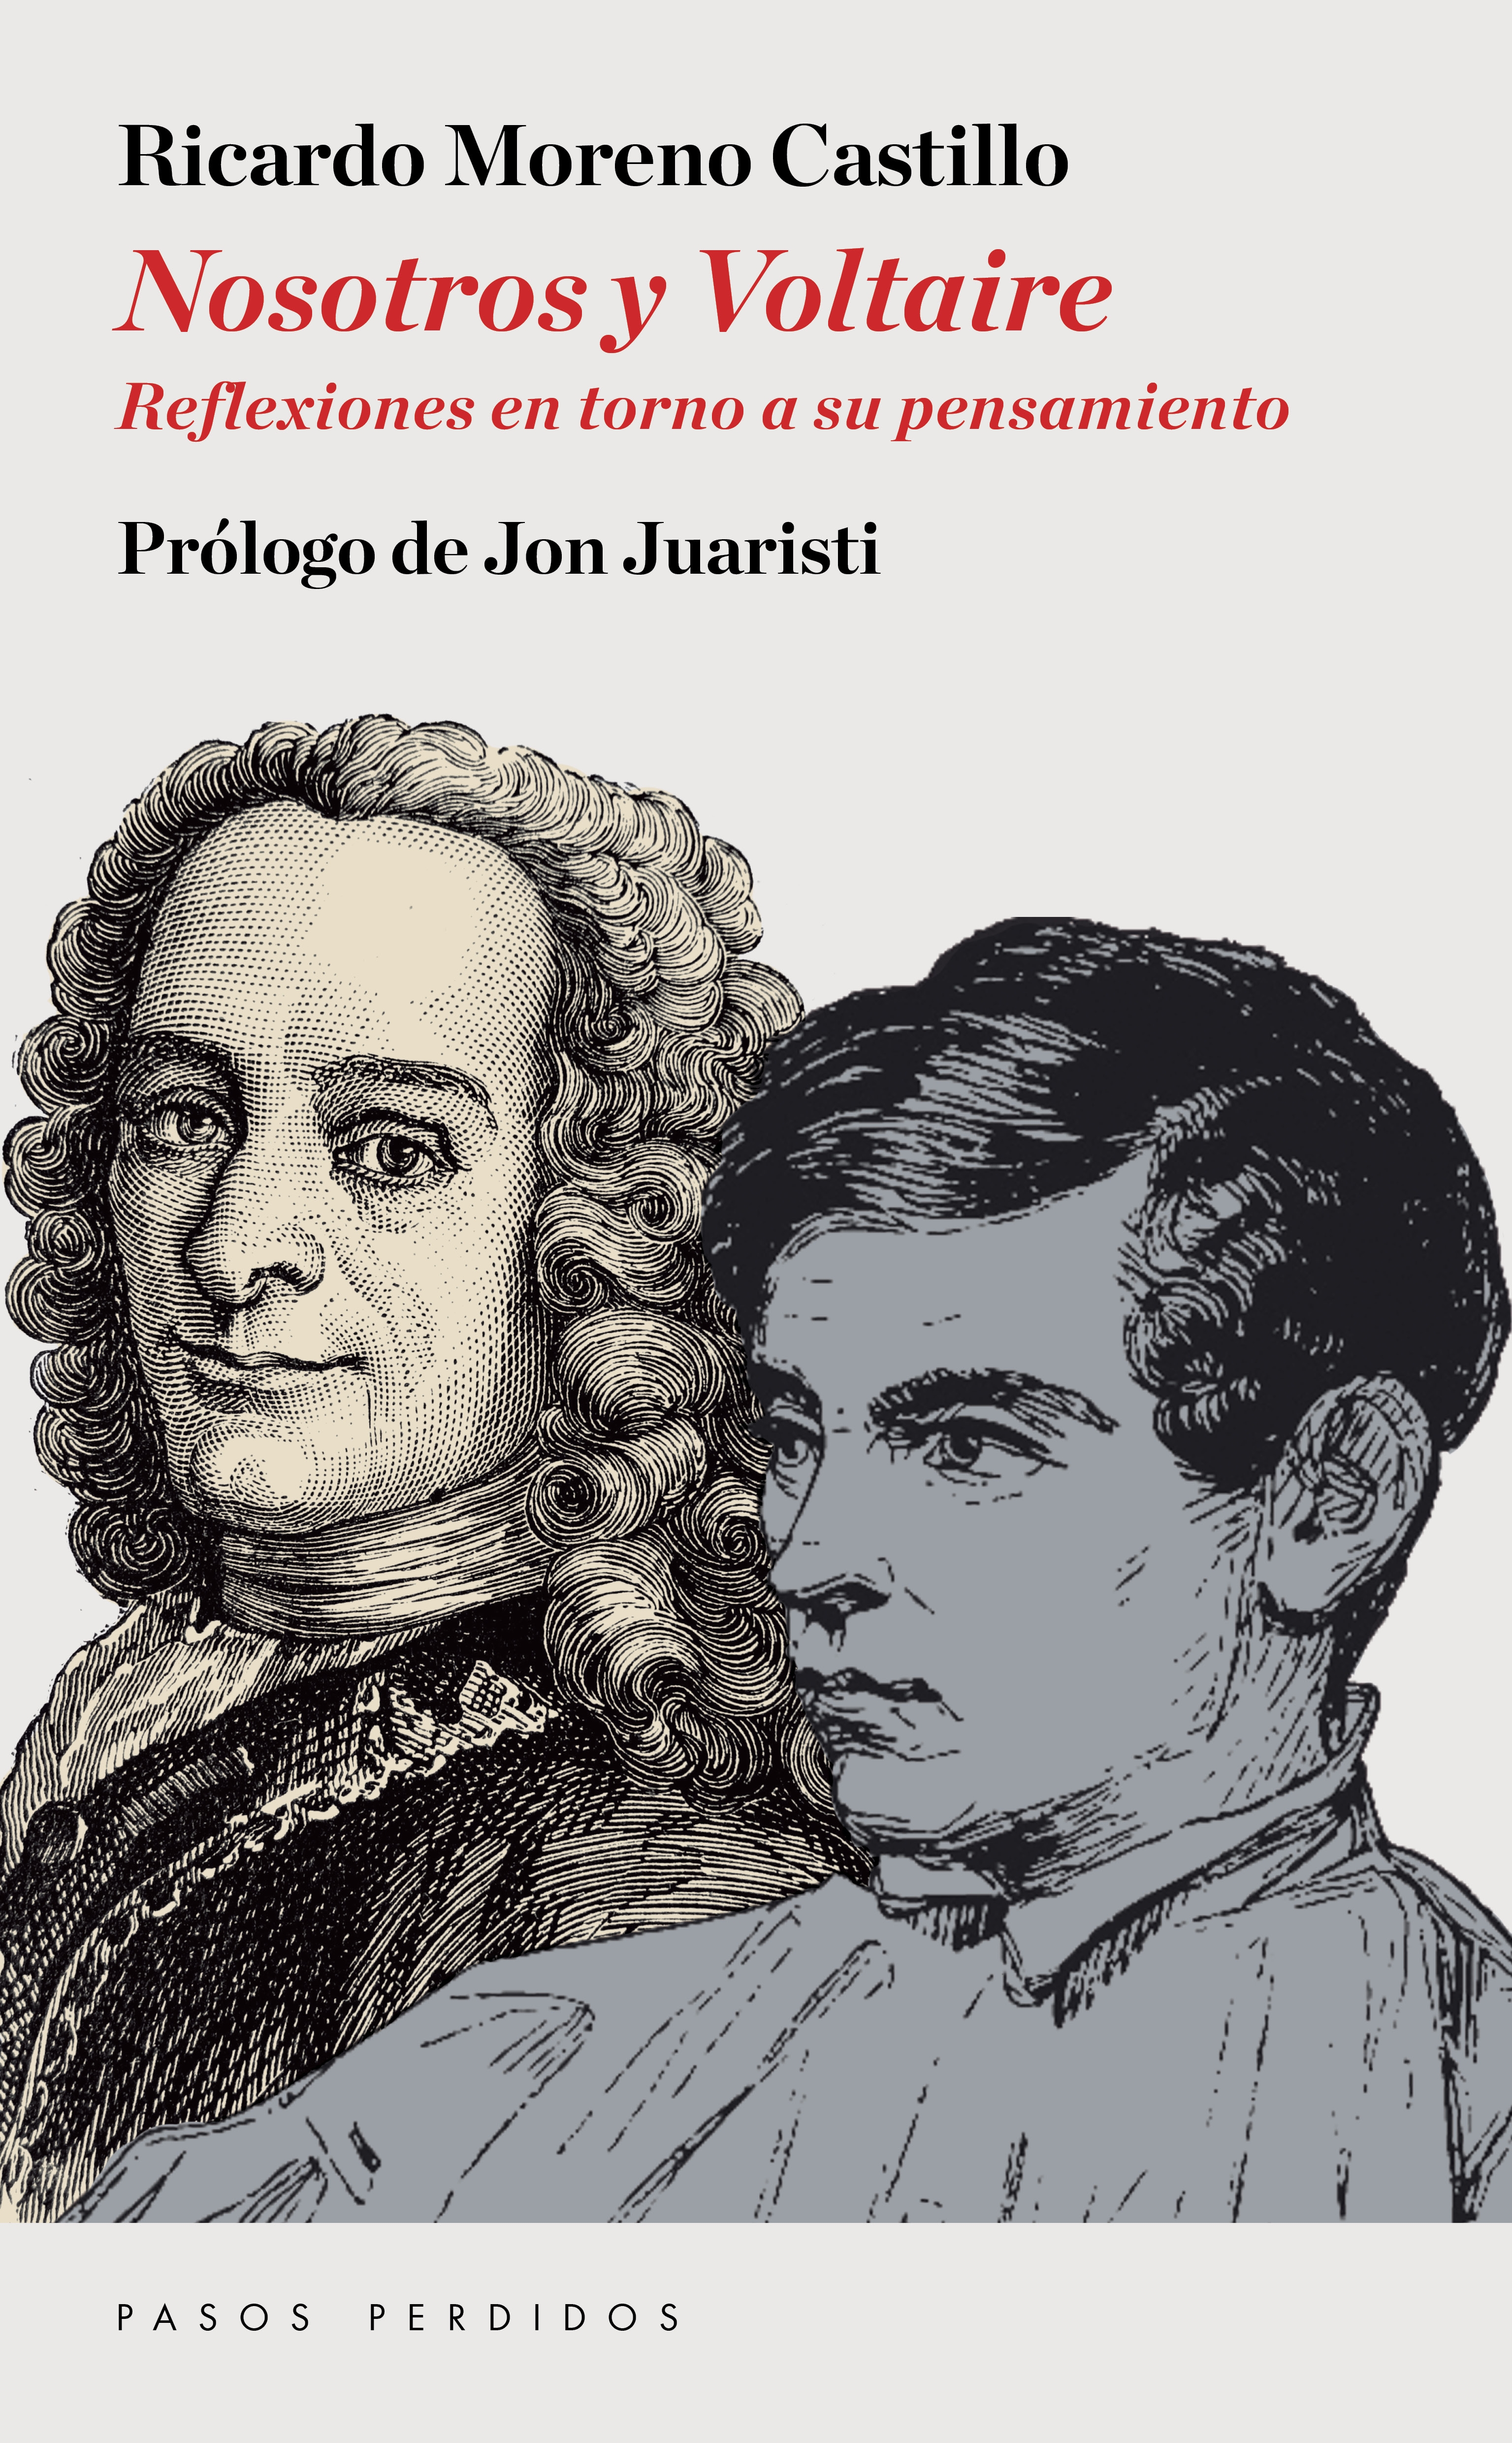 RICARDO MORENO CASTILLO. Nosotros y Voltaire (Pasos Perdidos)